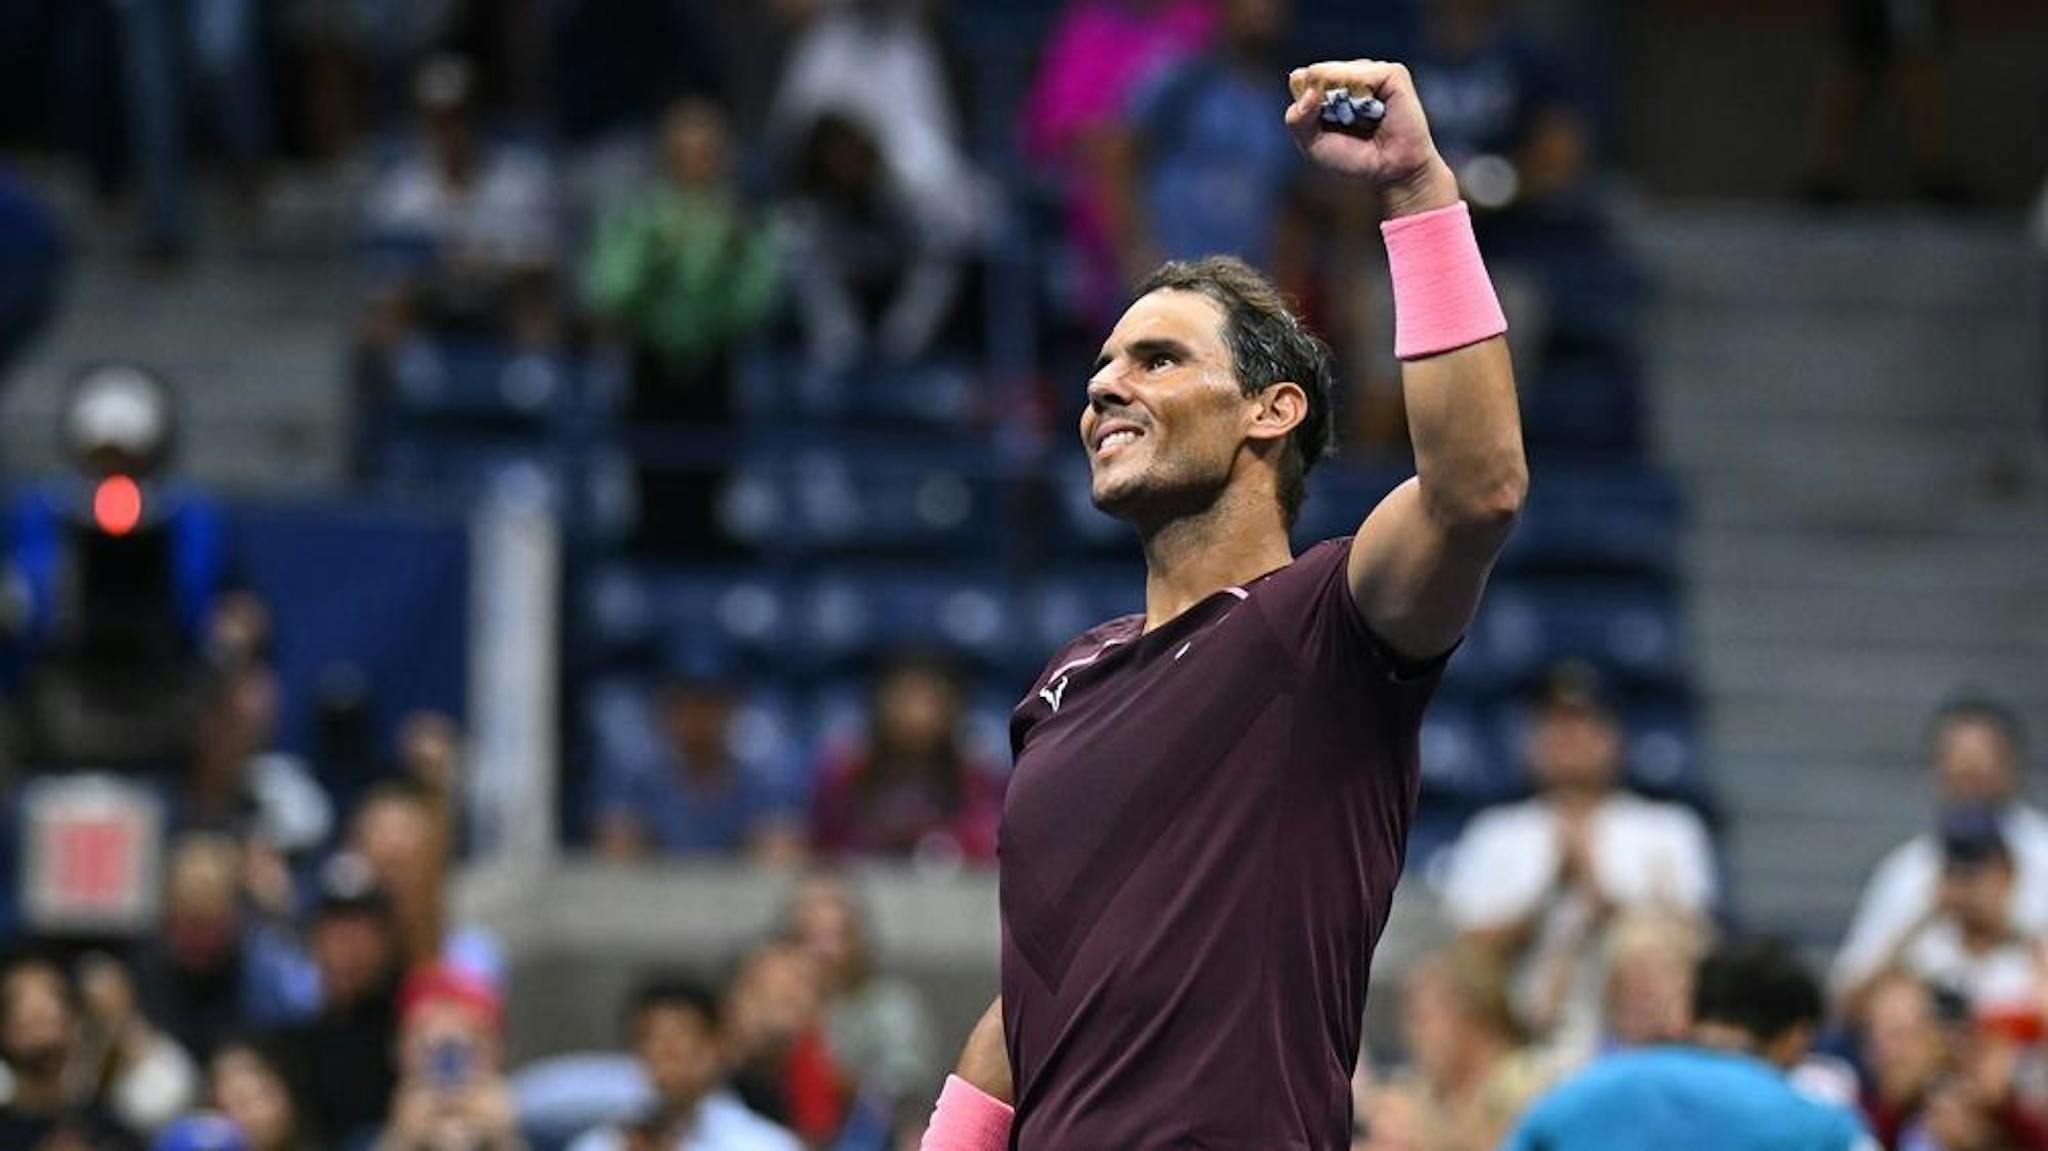 Très souvent blessé depuis quelques années, Rafael Nadal continue de revenir... et de gagner. La confiance est toujours là !